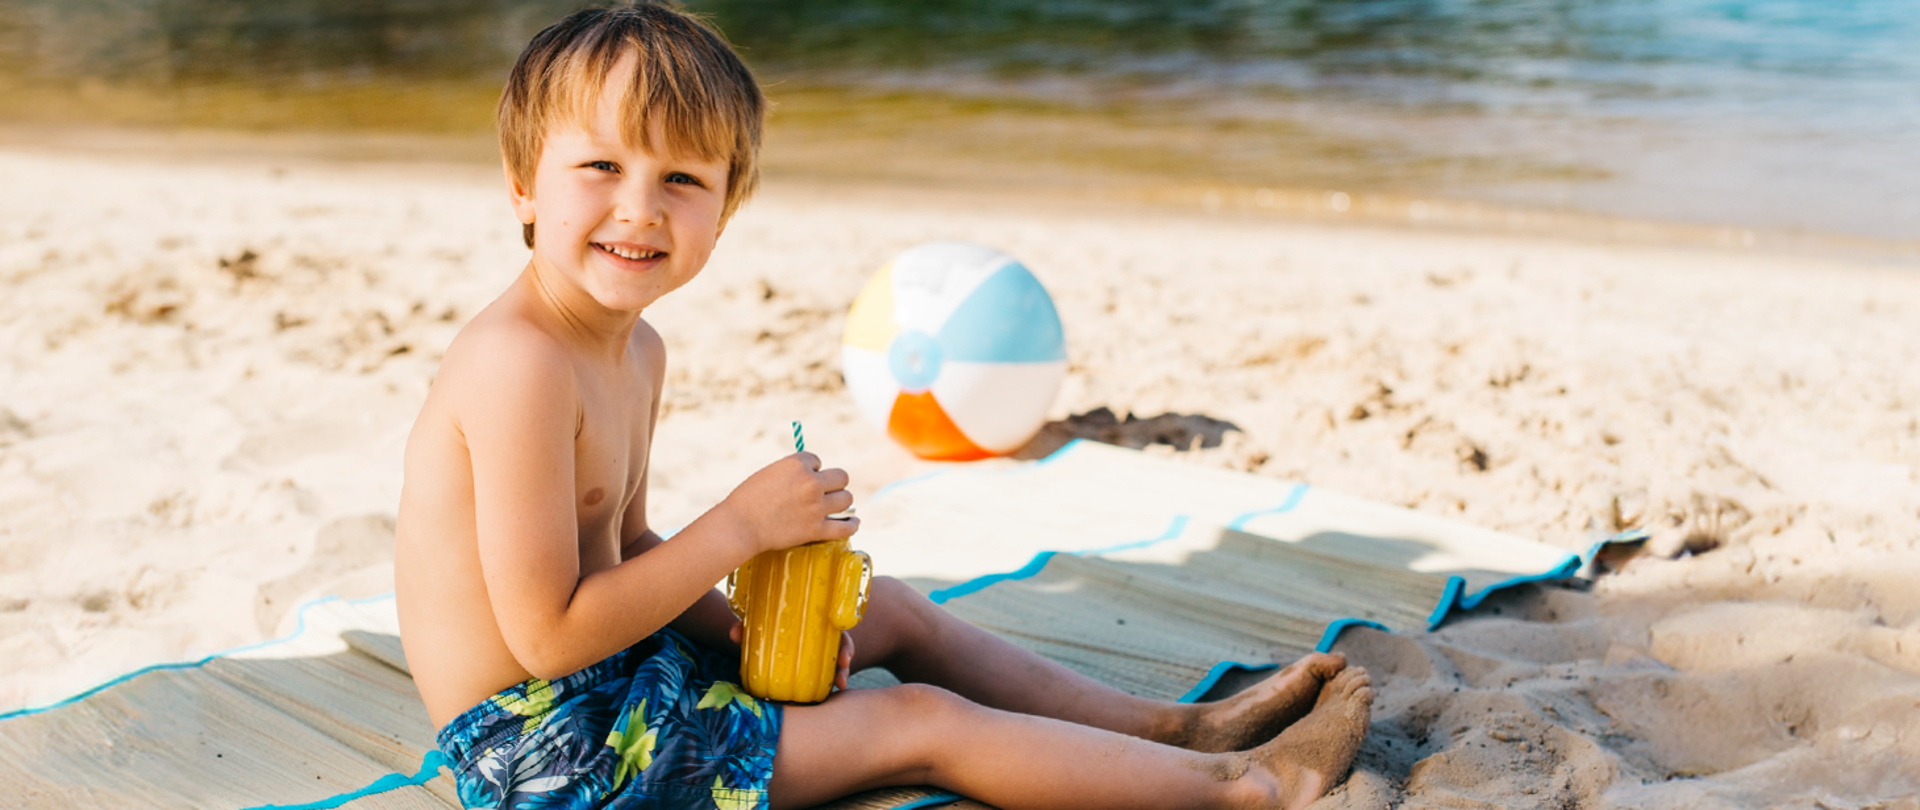 Uśmiechnięty chłopiec w szortach kąpielowych z napojem ze słomką siedzi na macie na plaży w oddali dmuchana piłka plażowa oraz woda